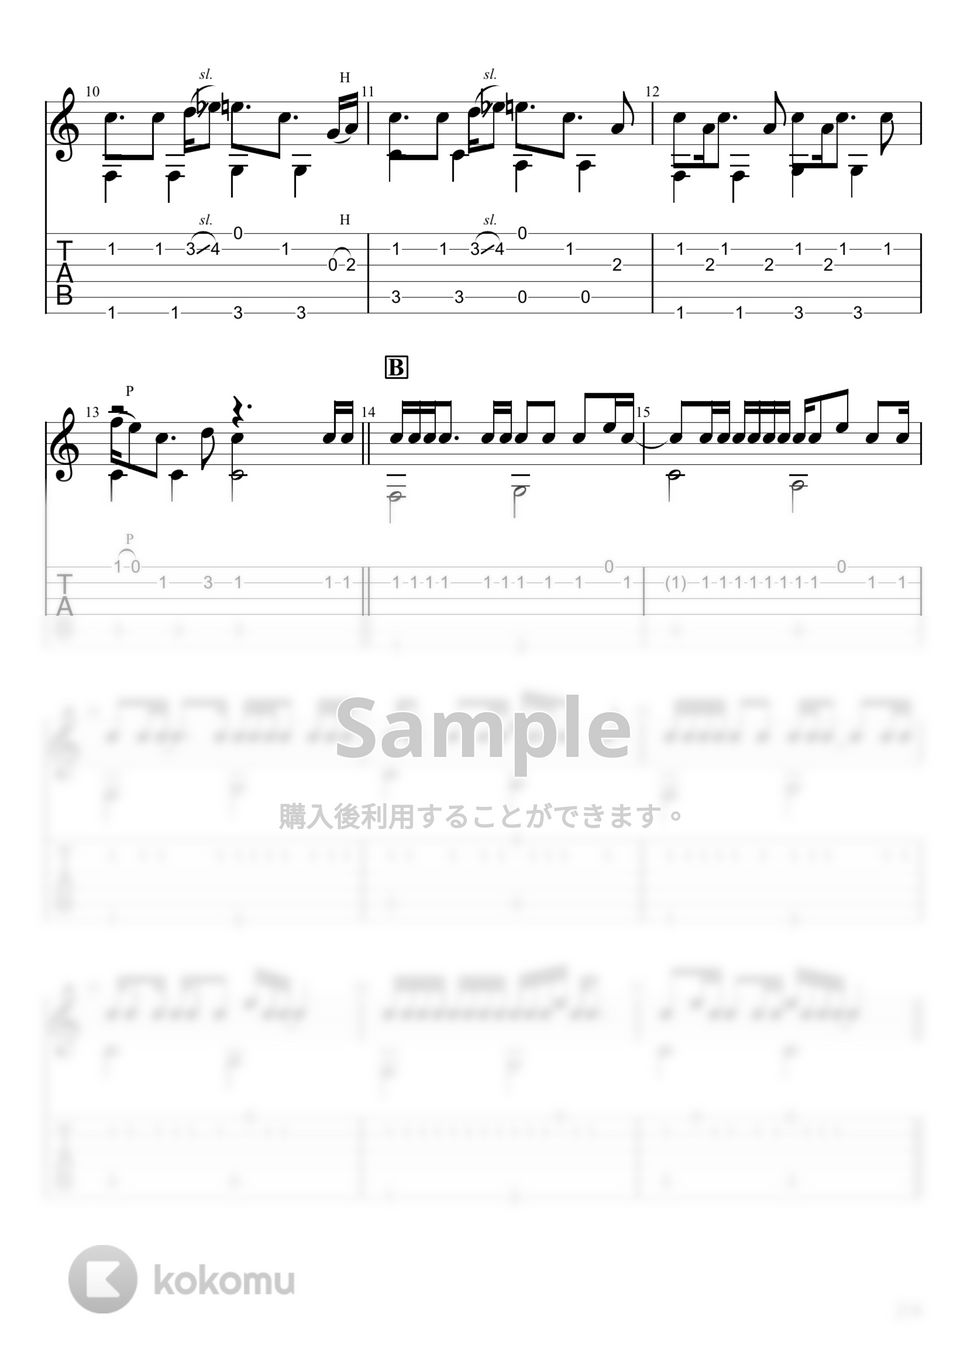 花澤香菜 - 恋愛サーキュレーション (ソロギター) by u3danchou